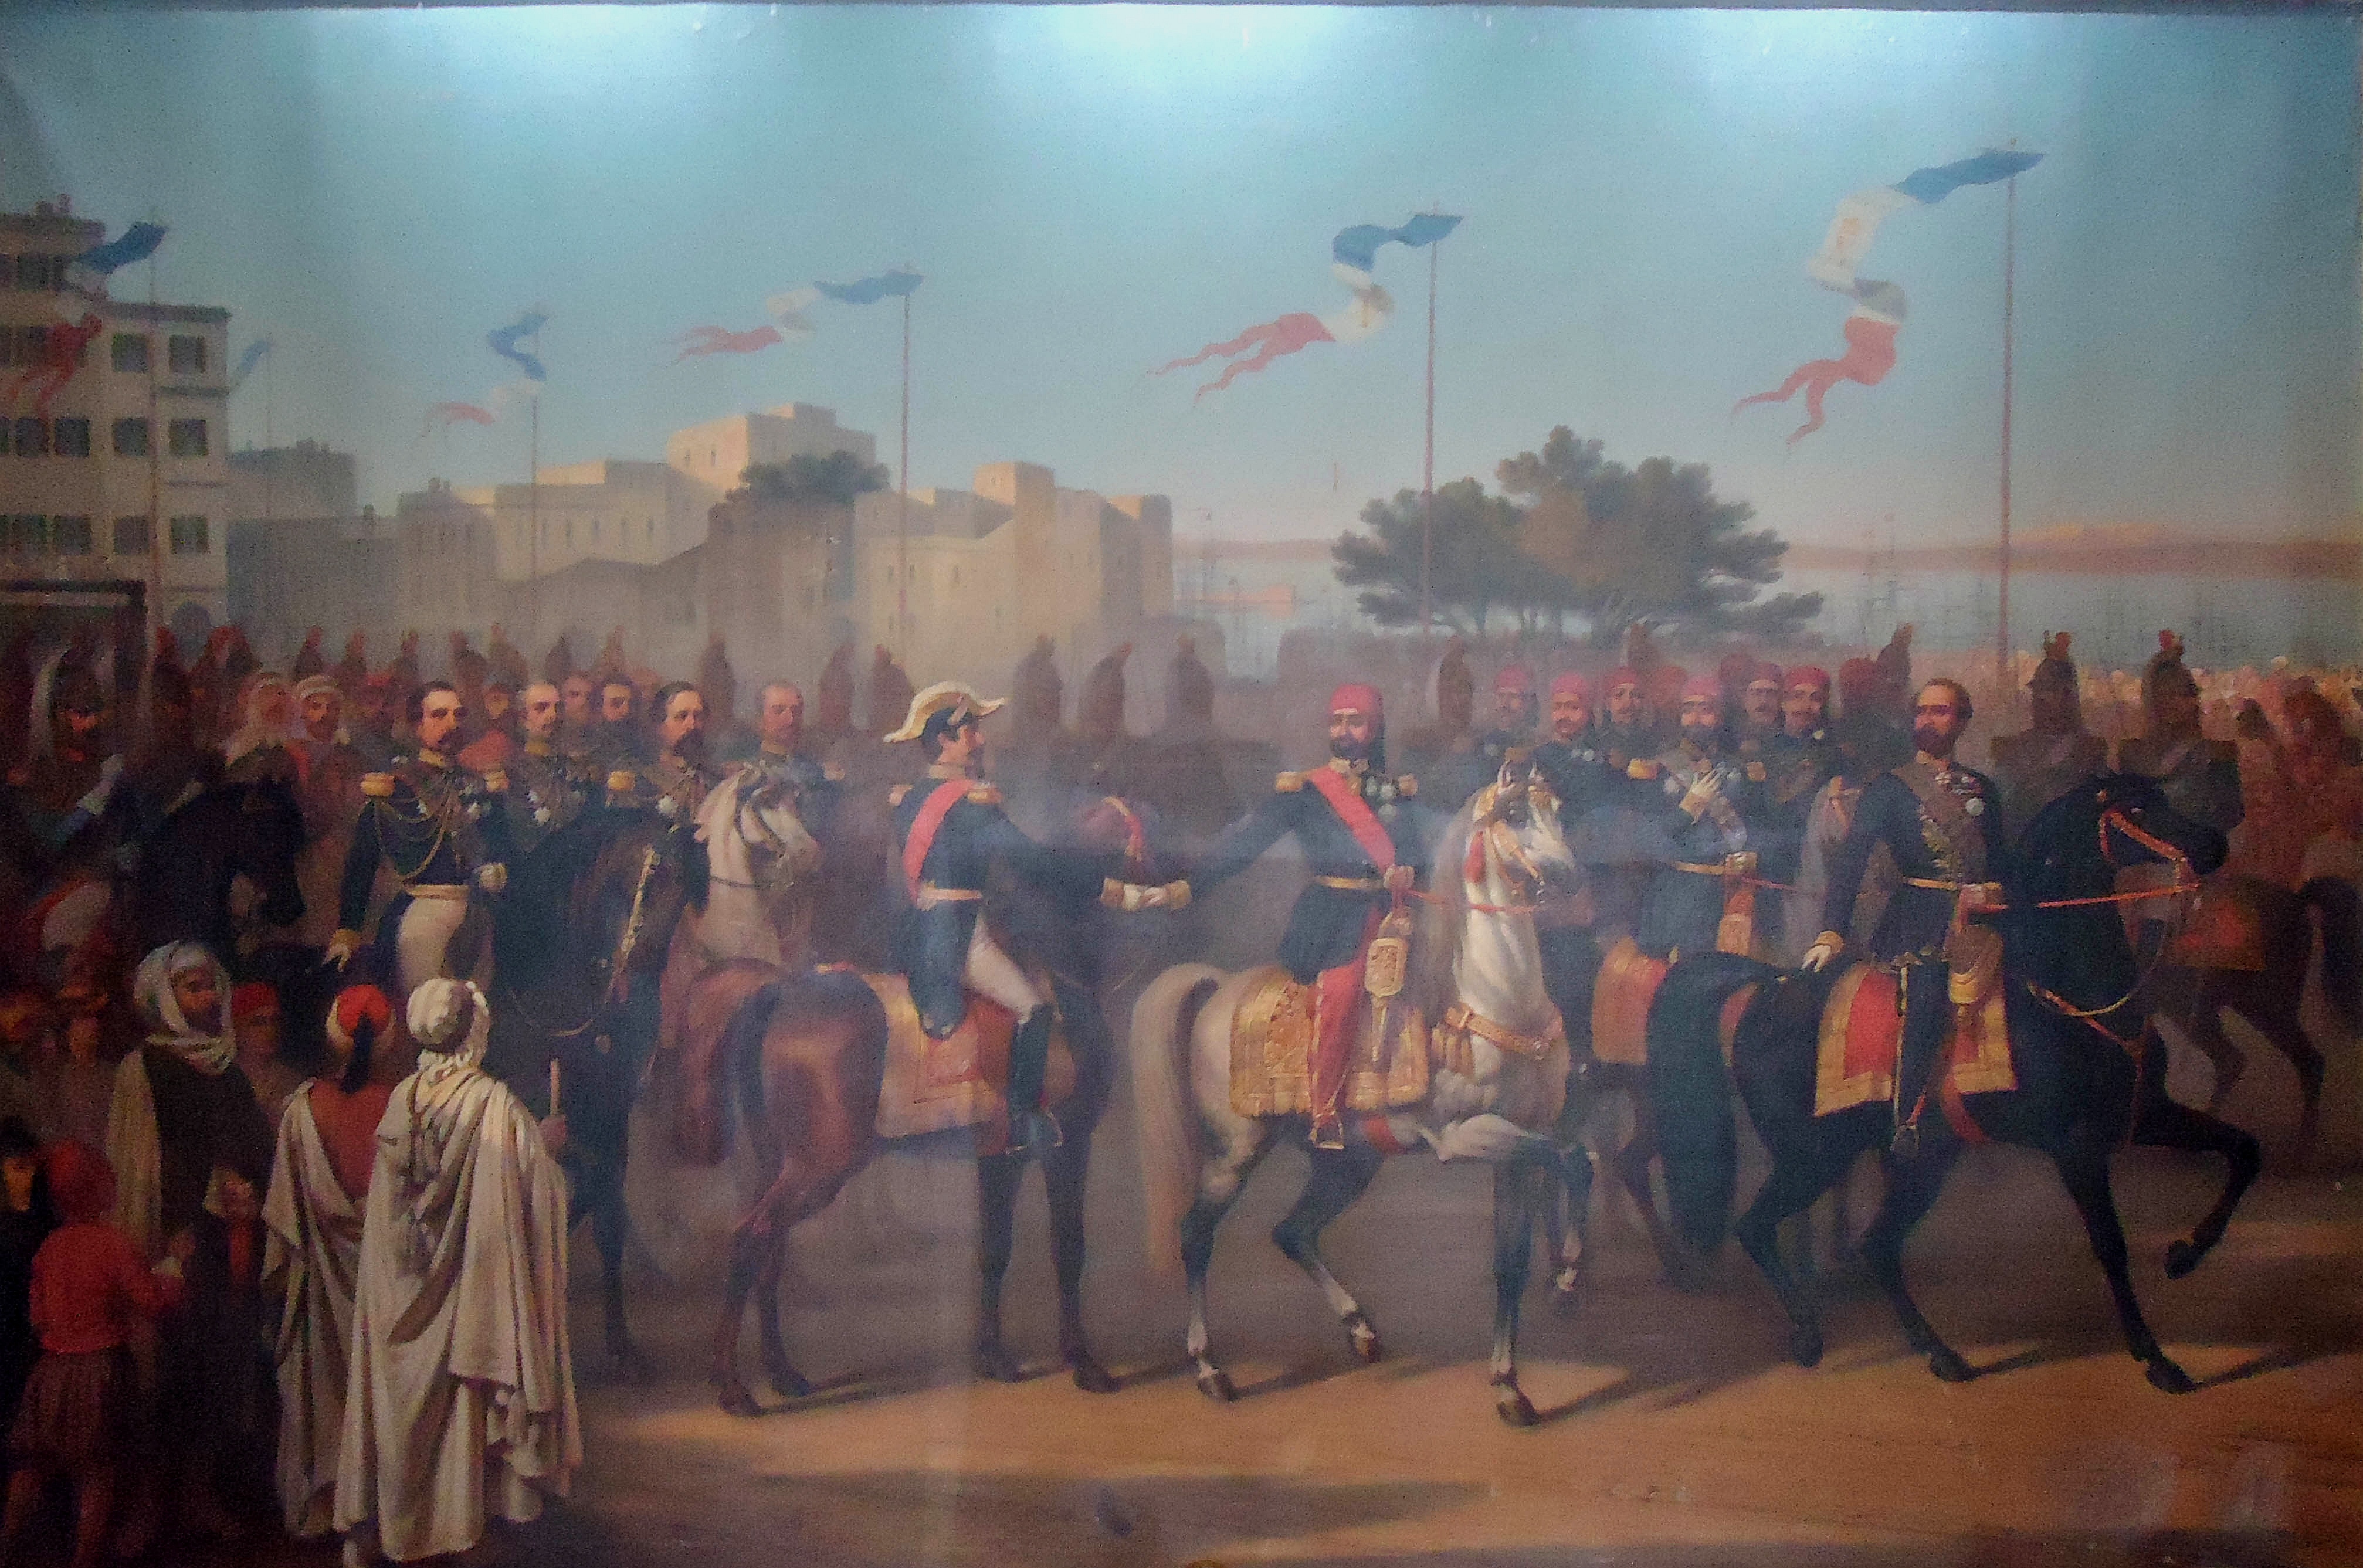 لقاء الصادق باي بنابليون الثالث ملك فرنسا سنة 1860 م بالجزائر